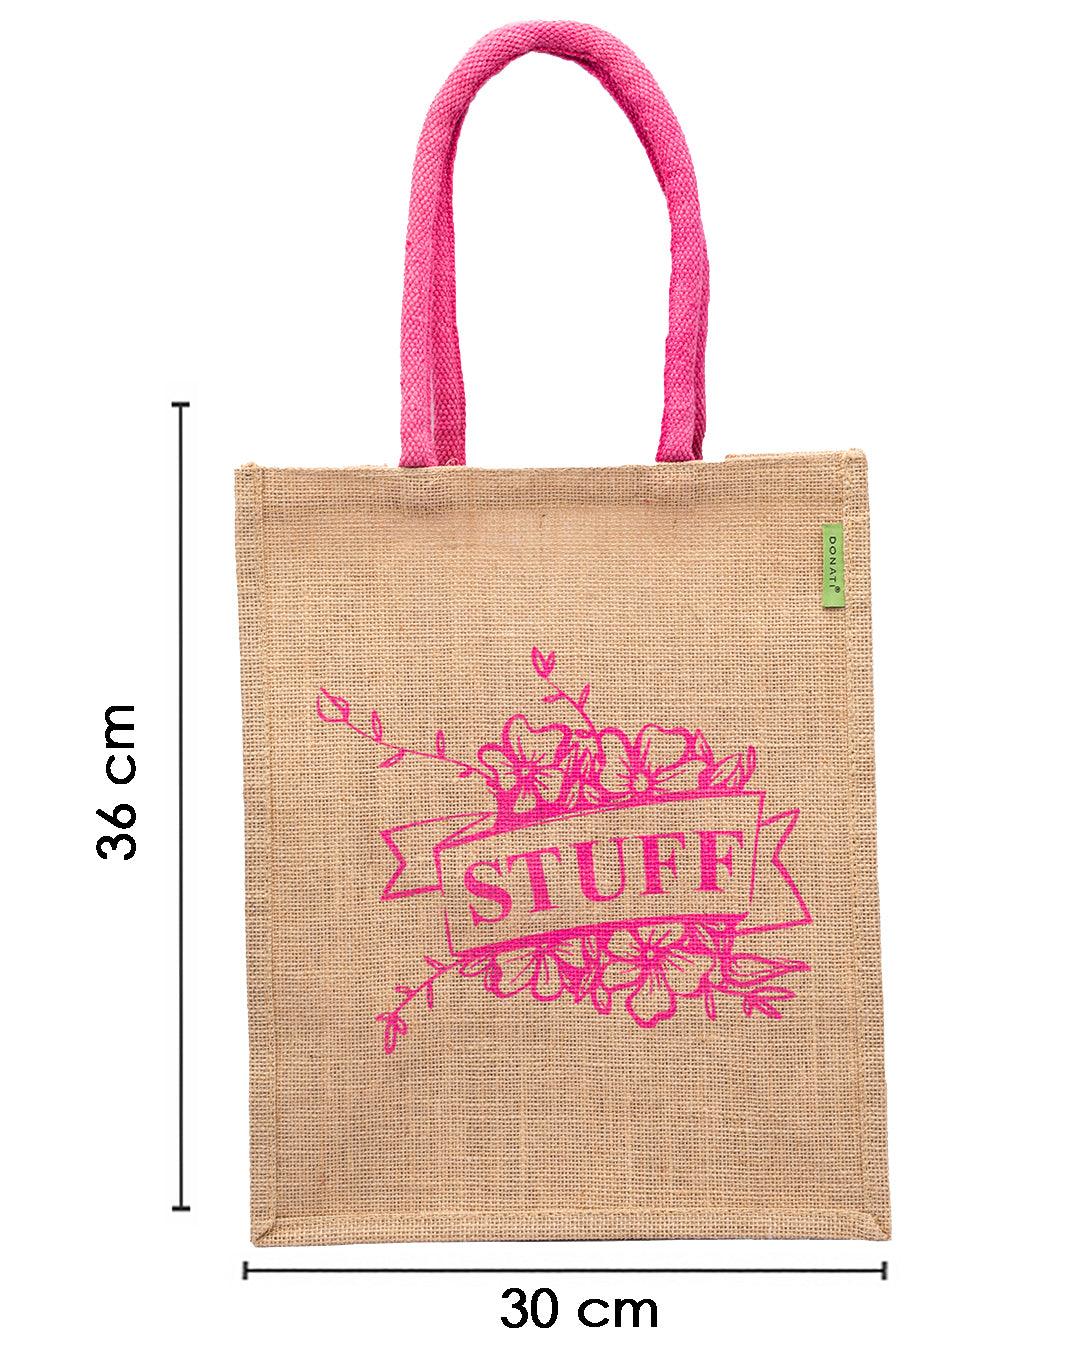 Donati Jute Bag, Natural Jute Finish, Dori Handle, Printed Bag, Pink & Natural Colour, Jute - MARKET 99